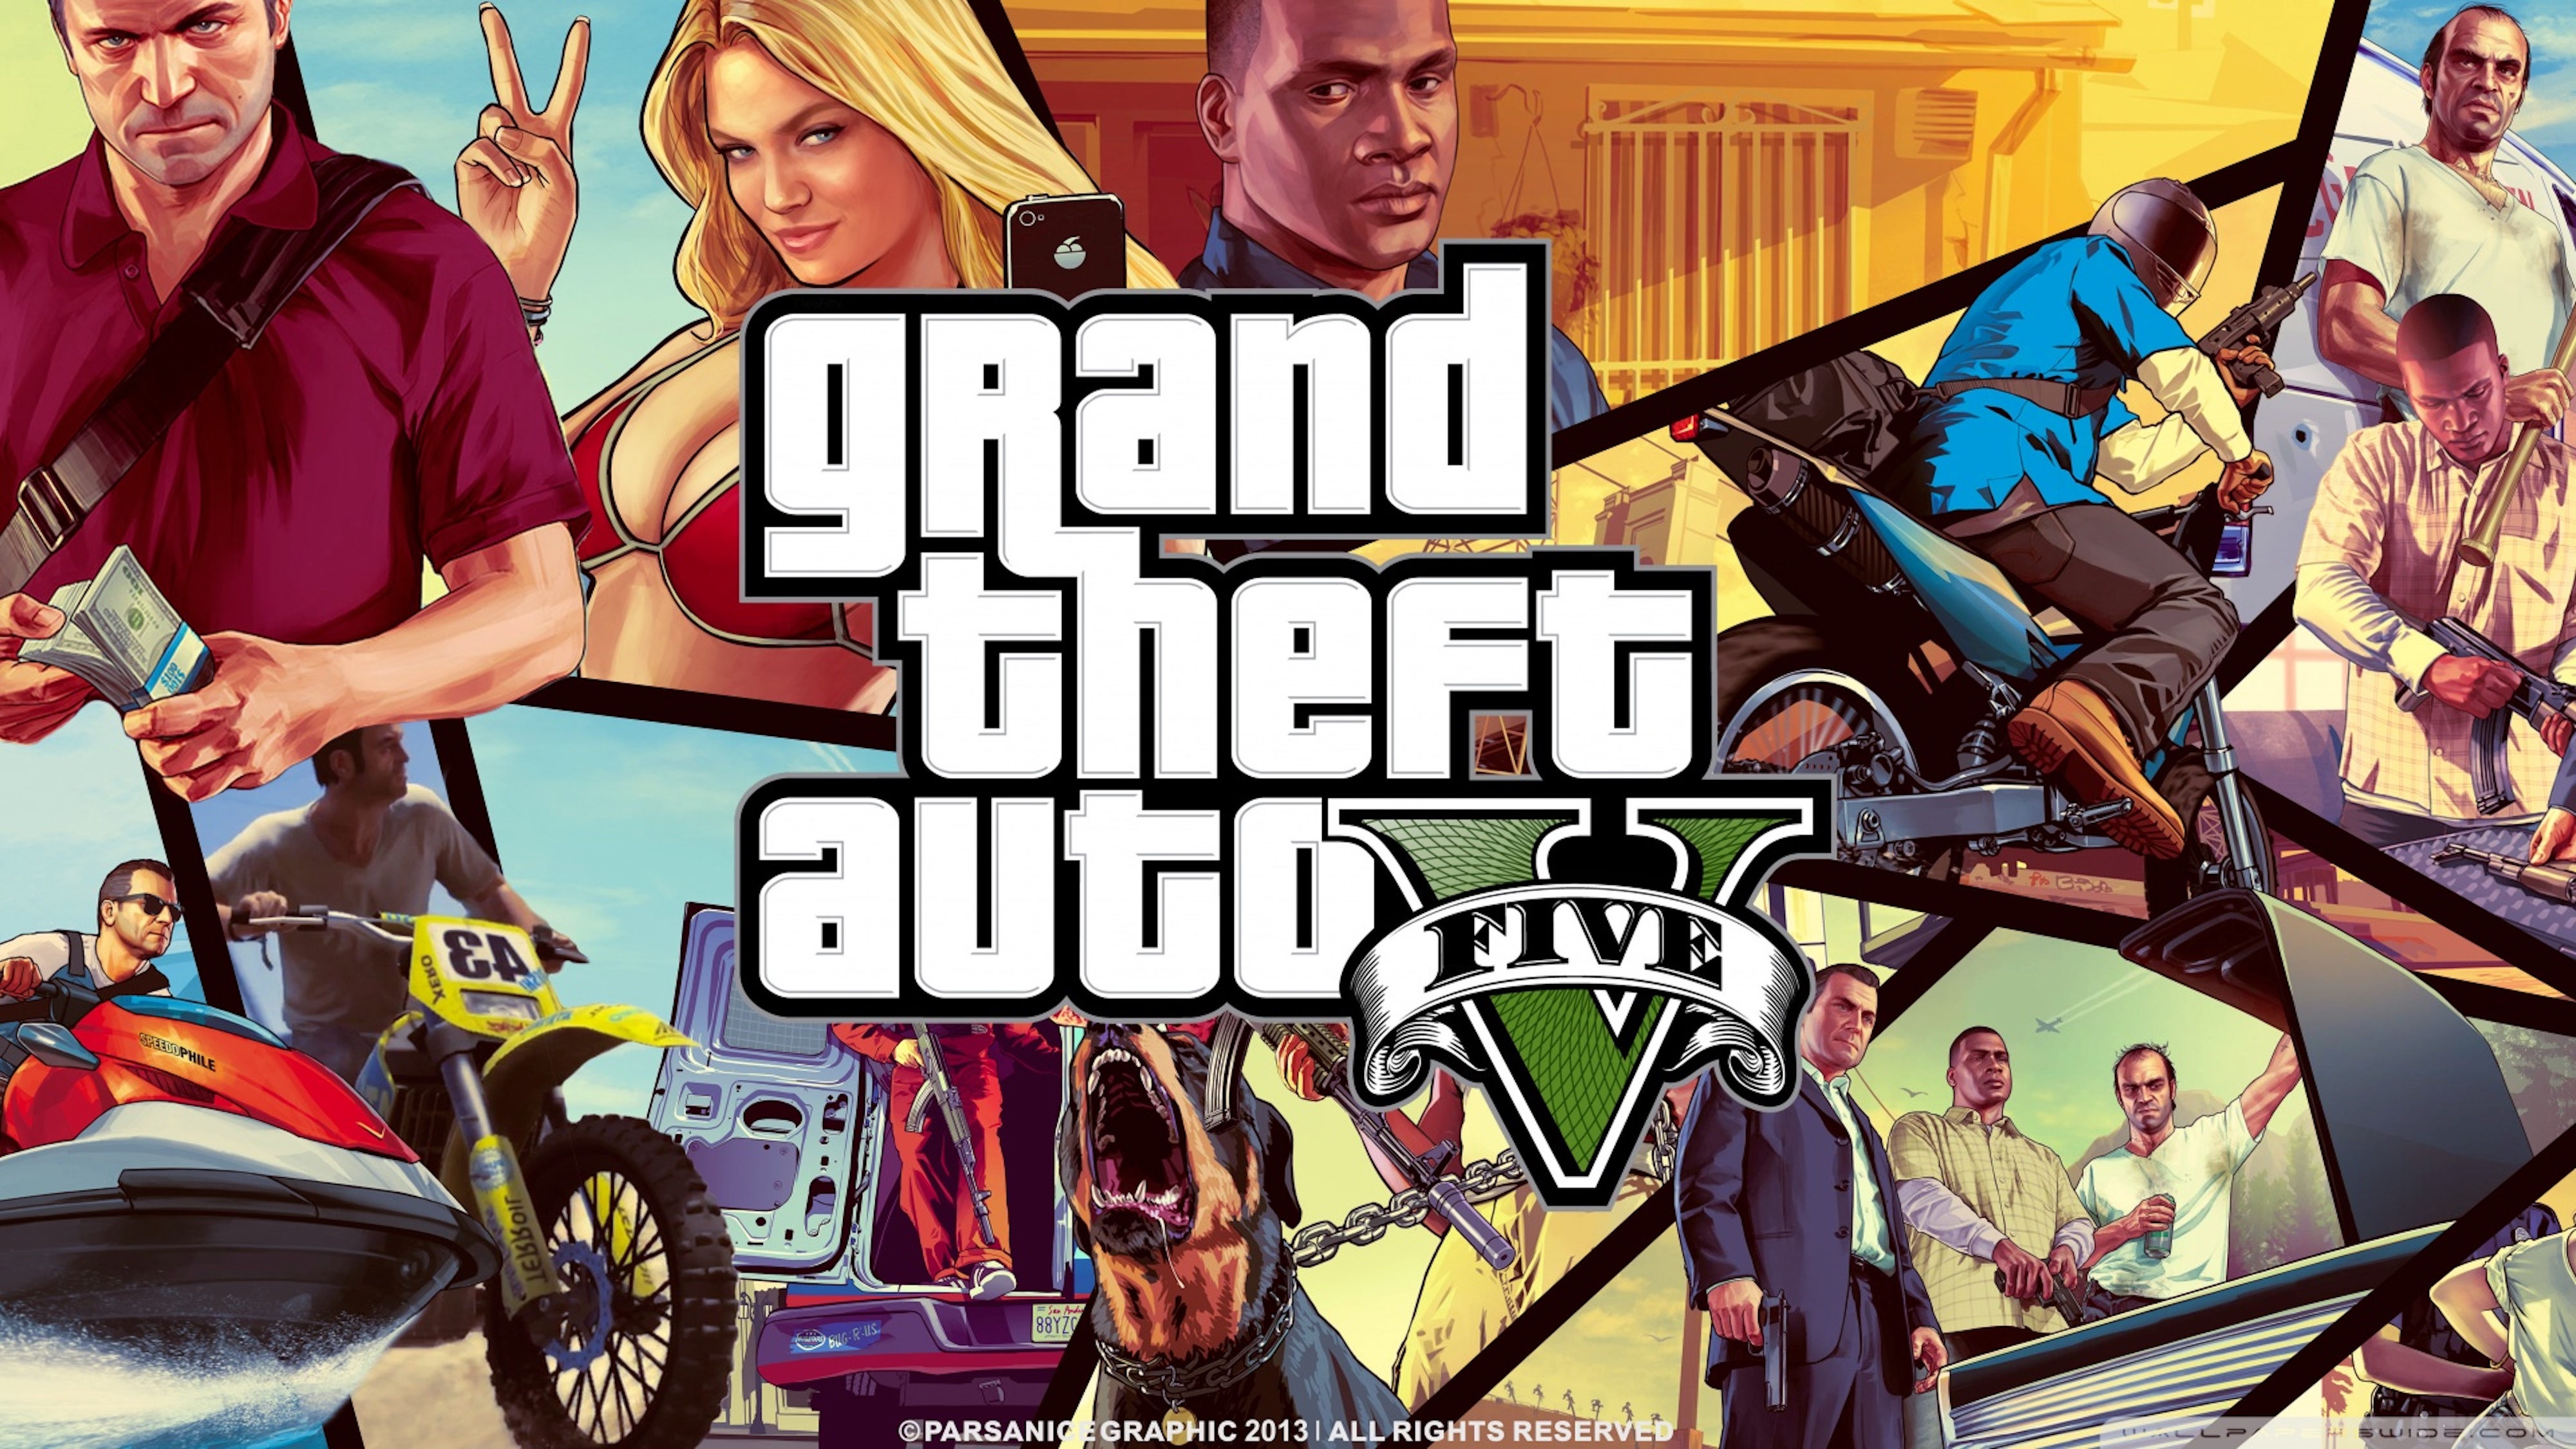 Grand Theft Auto VI - Wikipedia